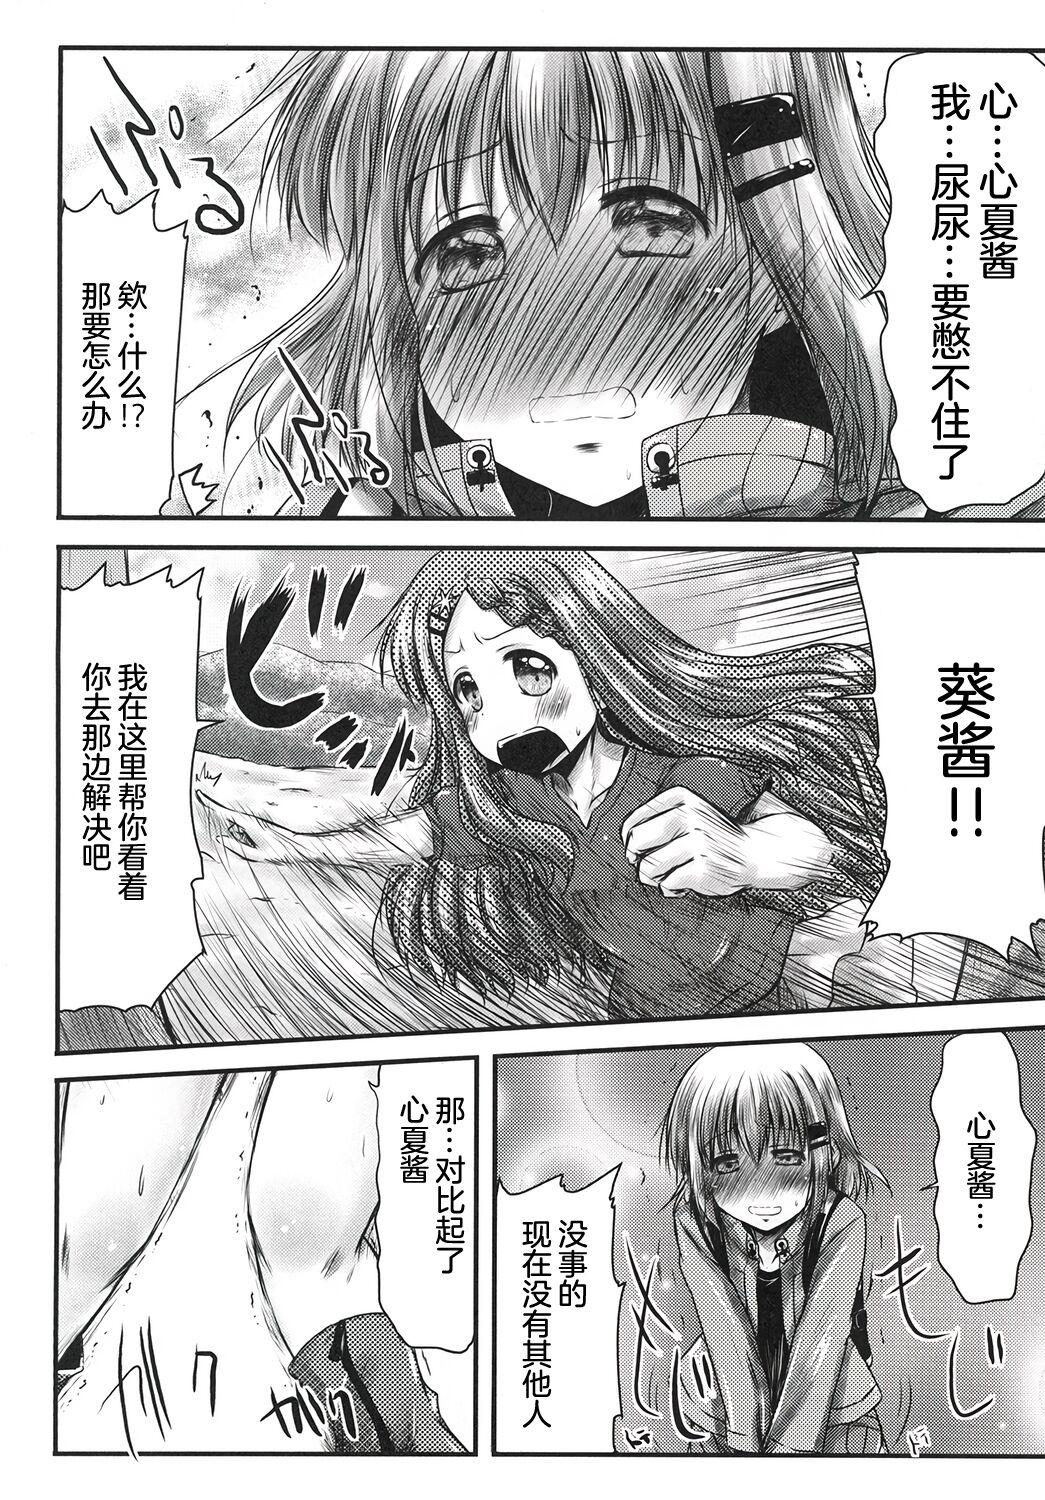 Carro Watashi no Shinrin Genkai wa Mada Toppa Shitenai! - Yama no susume Titty Fuck - Page 5